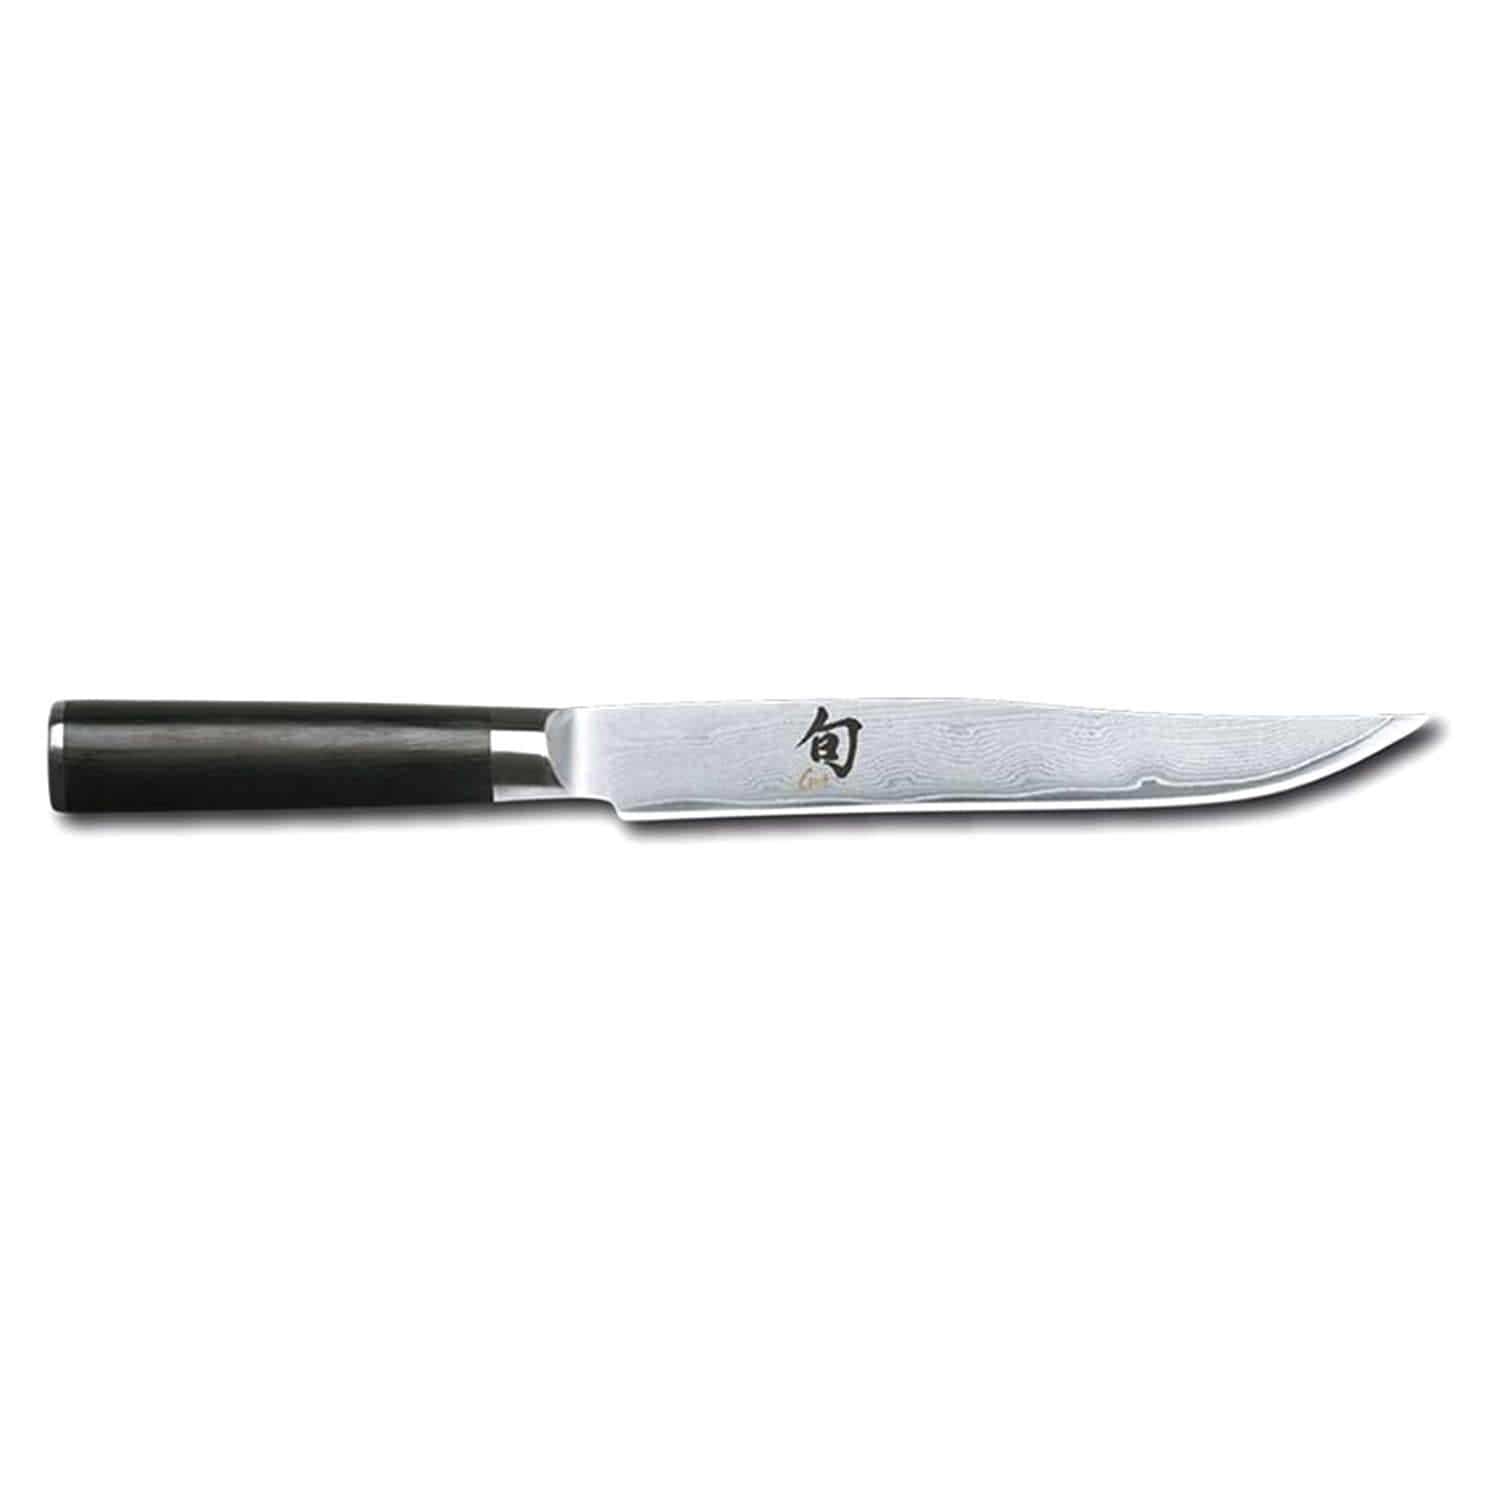 Kai Shun 8 Carving Knife - Black, 20 cm - DM-0703 - Jashanmal Home